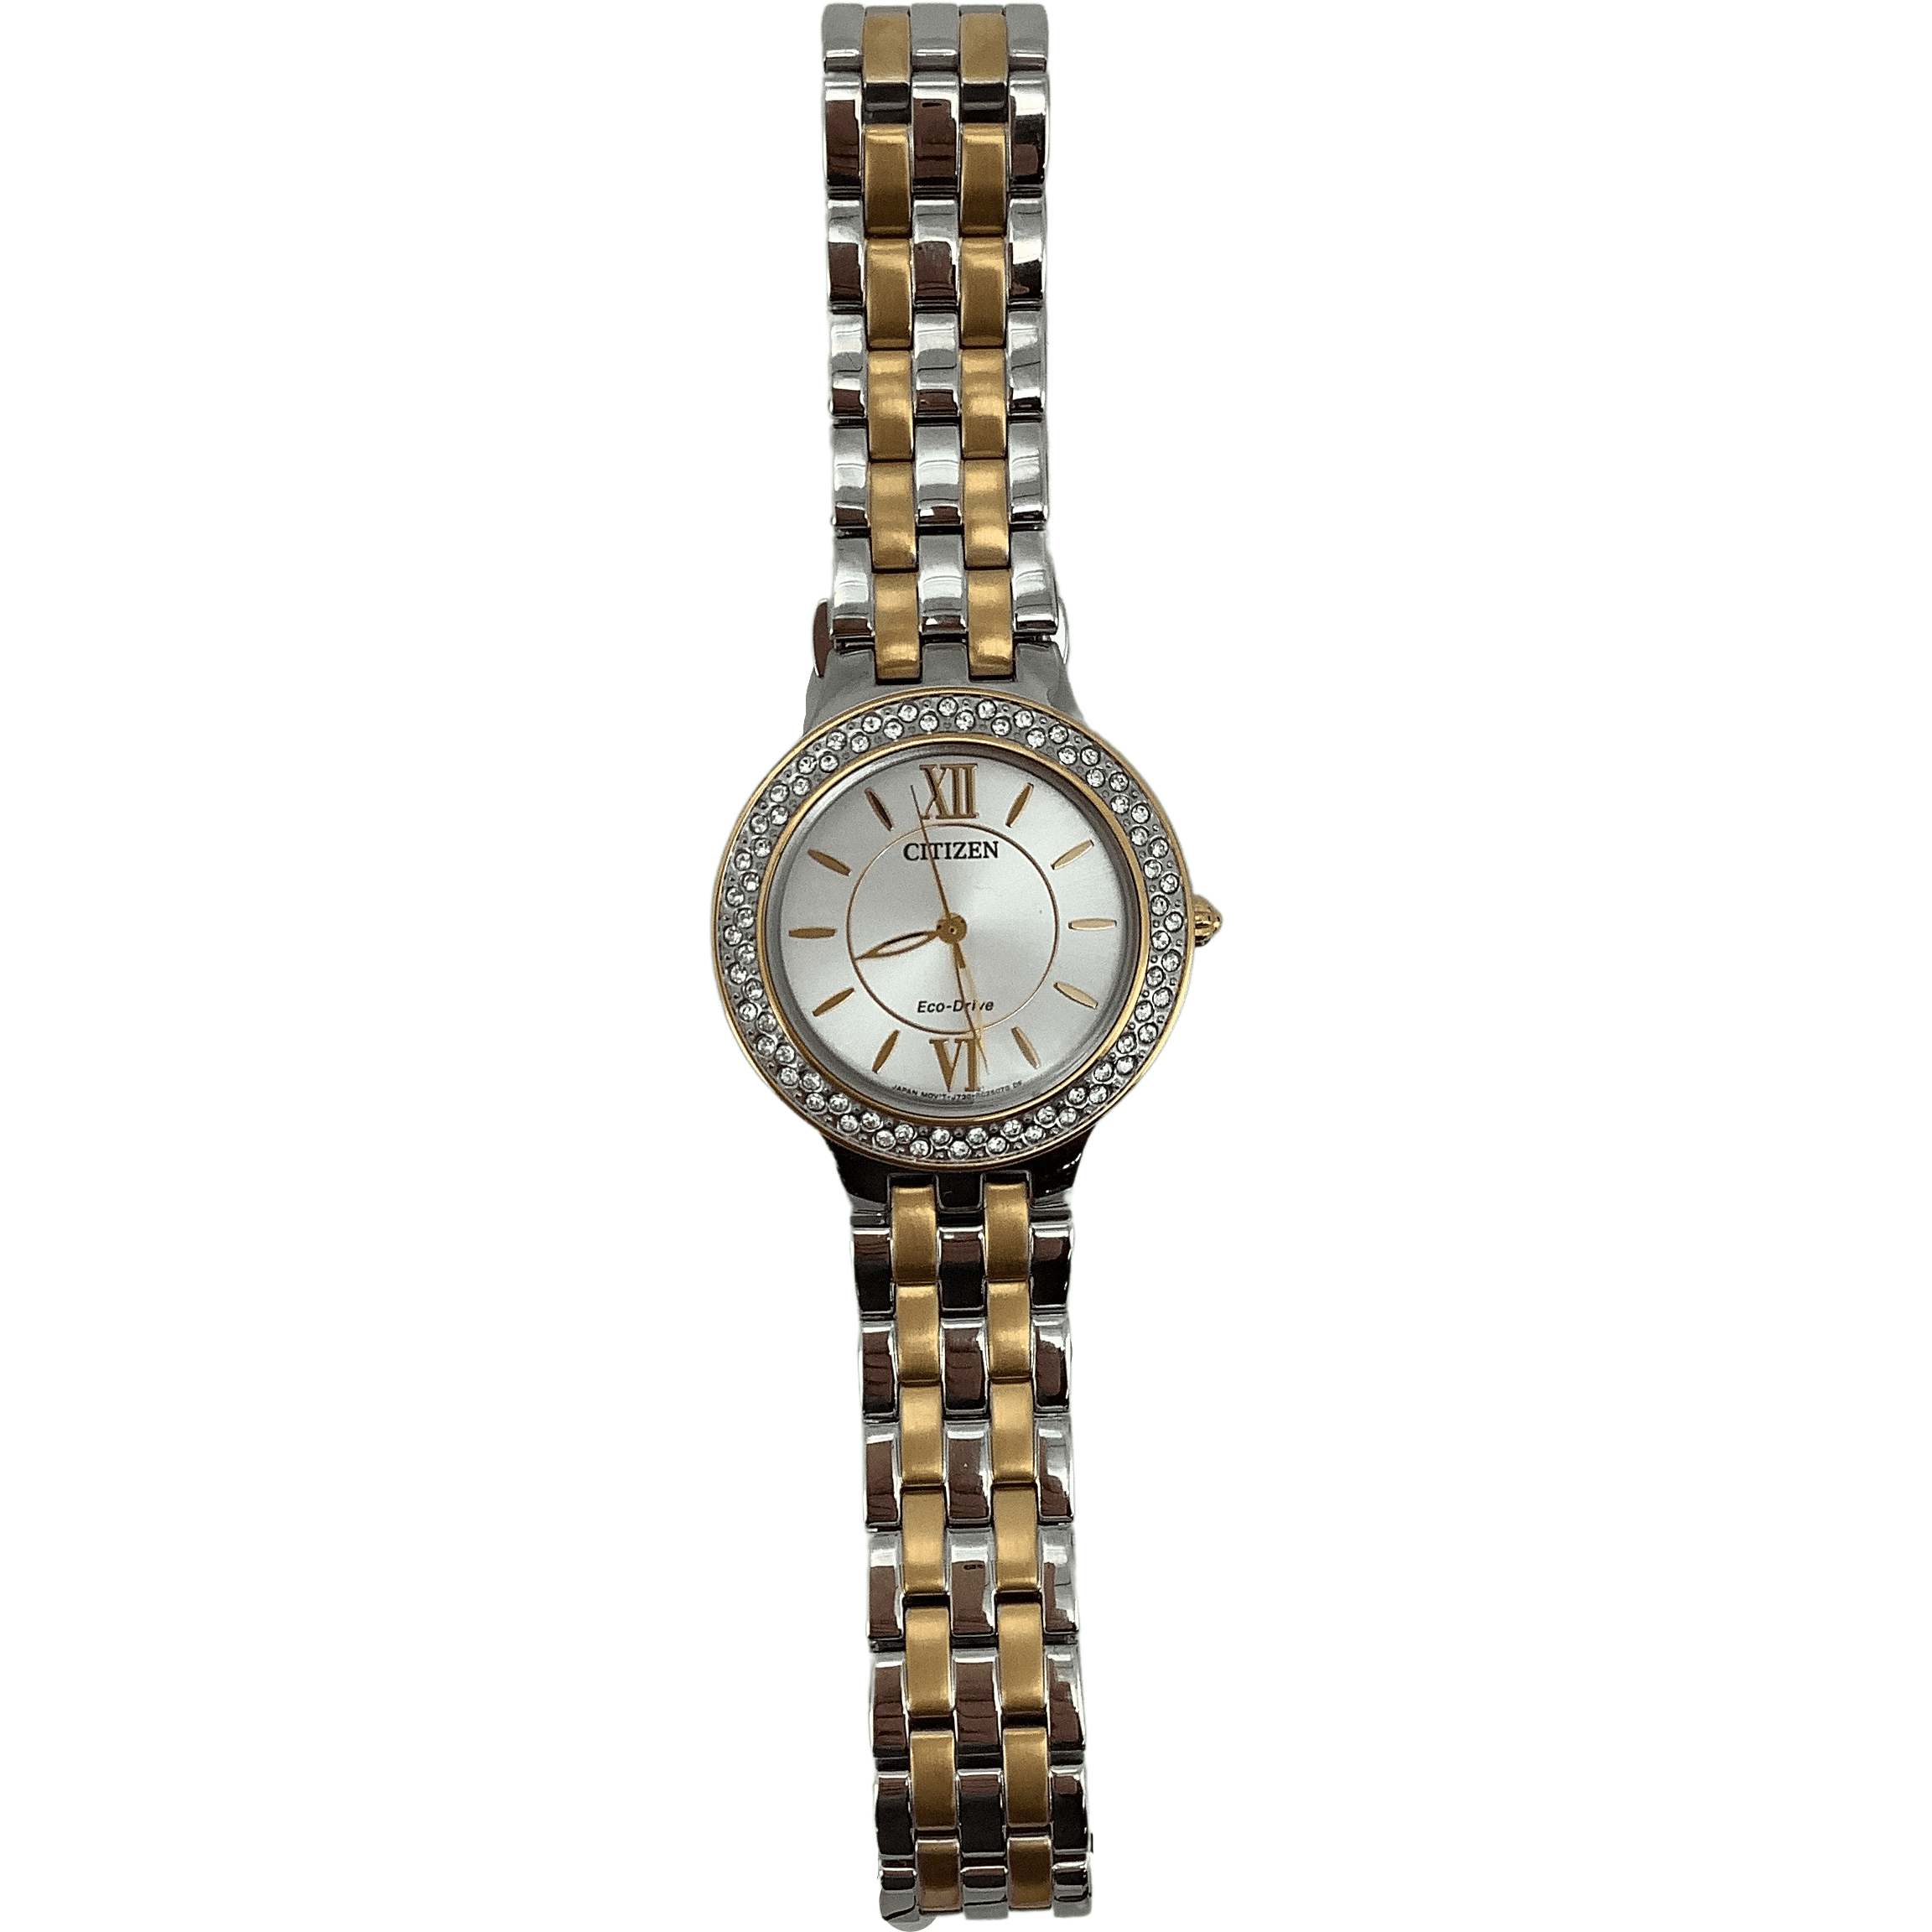 Citizen Women's Wrist Watch / Silver and Gold / Women's Accessories / Swarovski Crystals